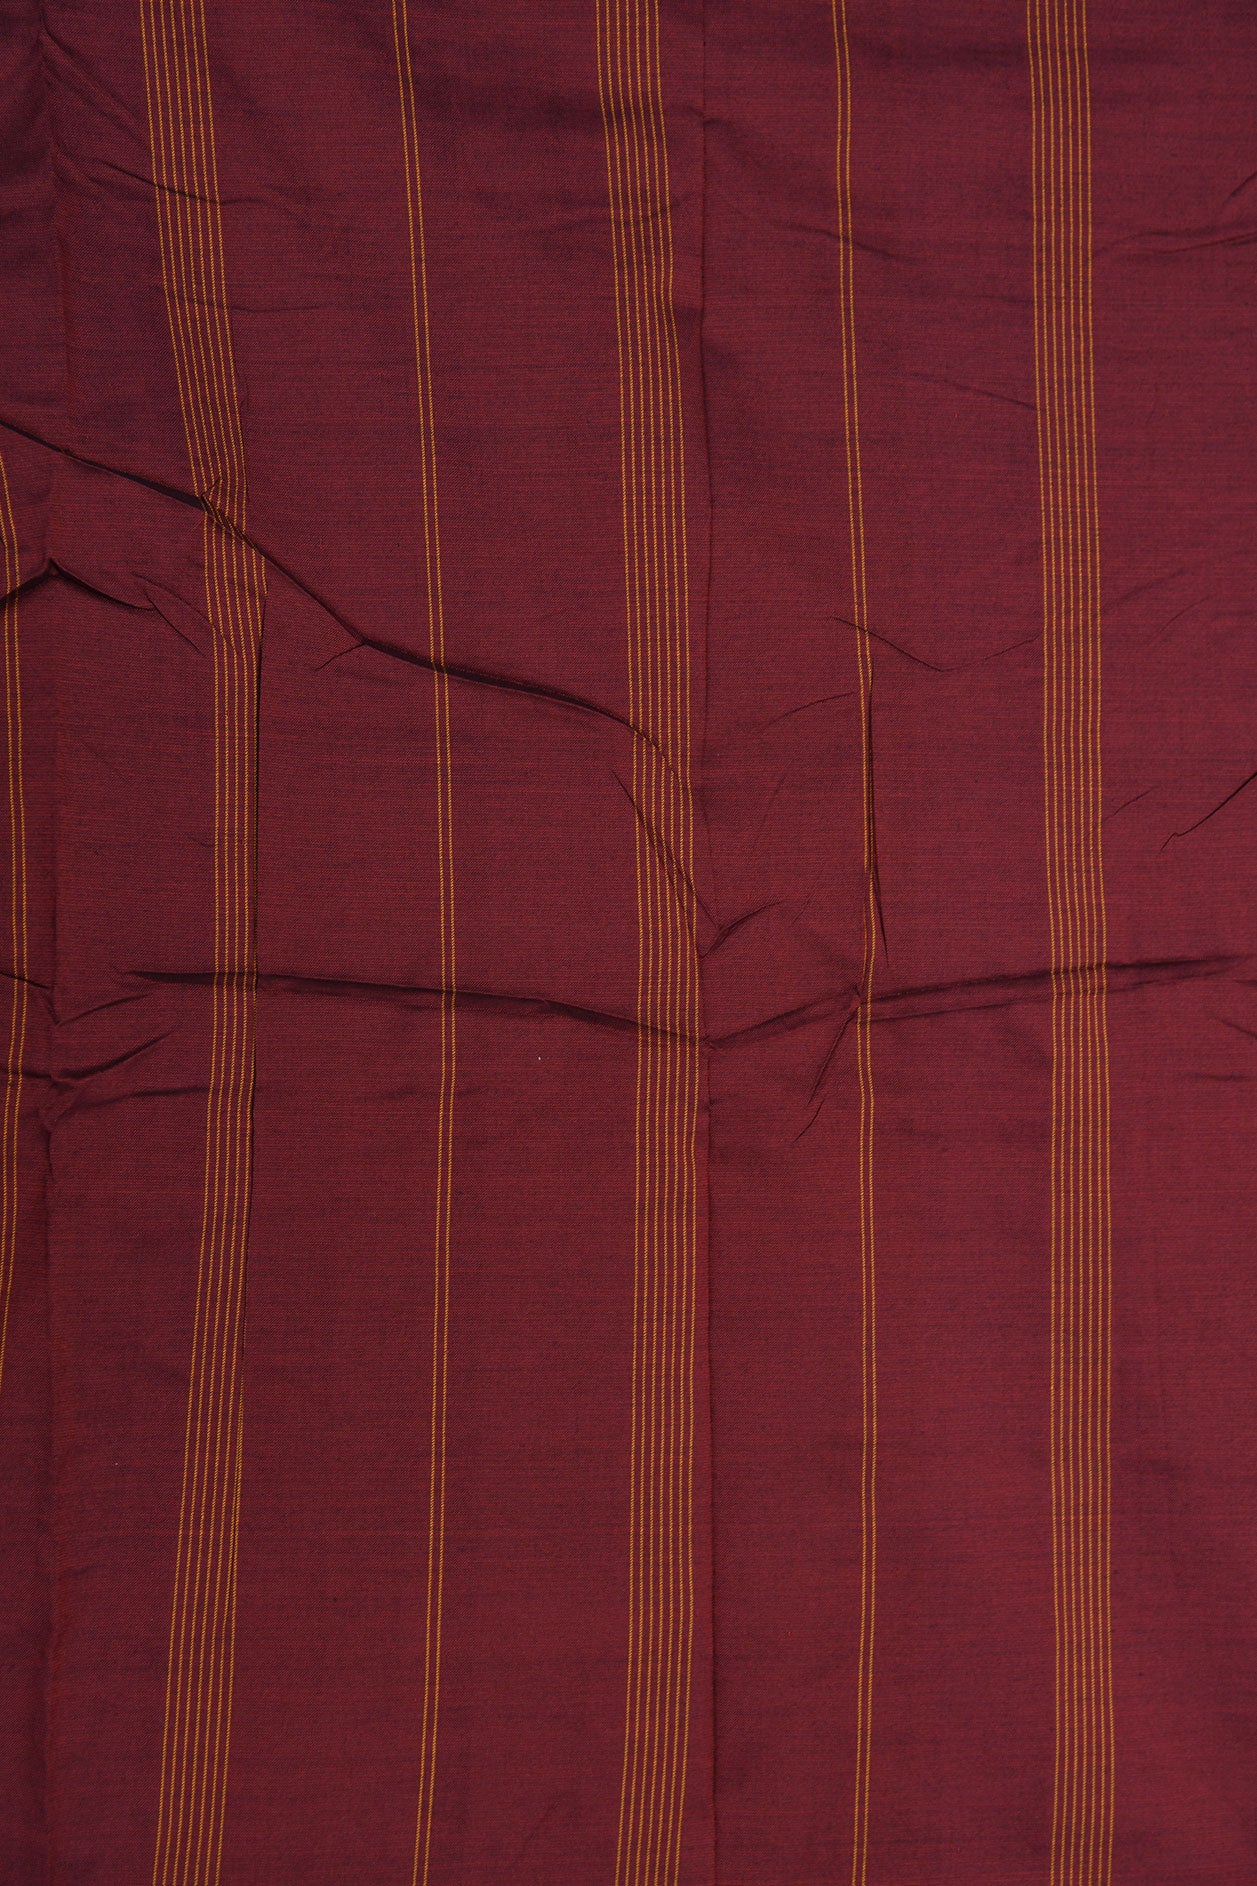 Thread Work Stripes Border In Plain Forest Green Dharwad Cotton Saree